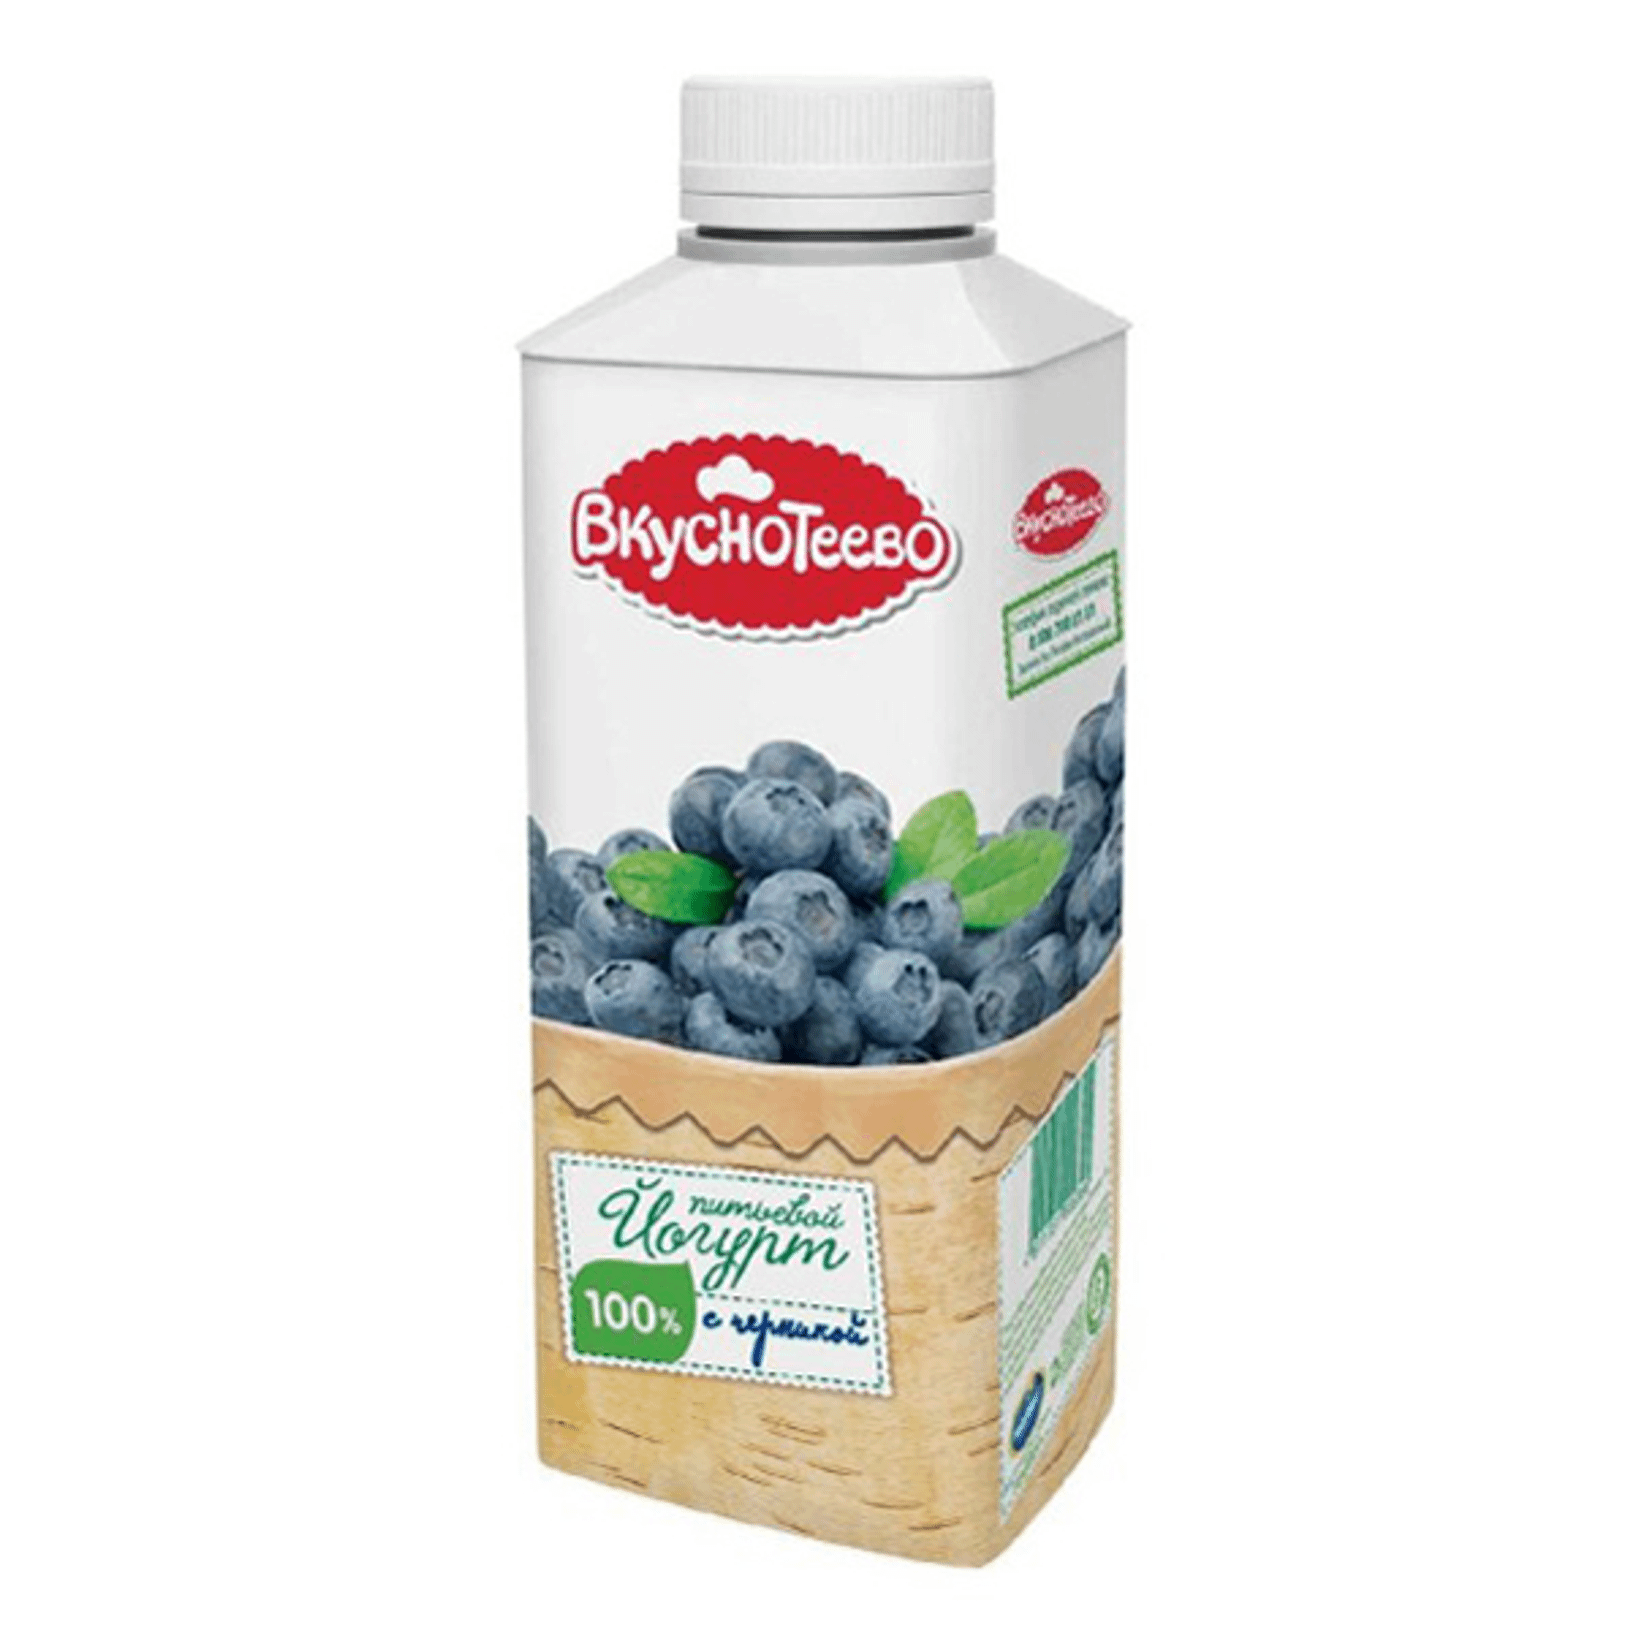 Йогурт вкуснотеево питьевой молочный  с черникой 1.5 % 750